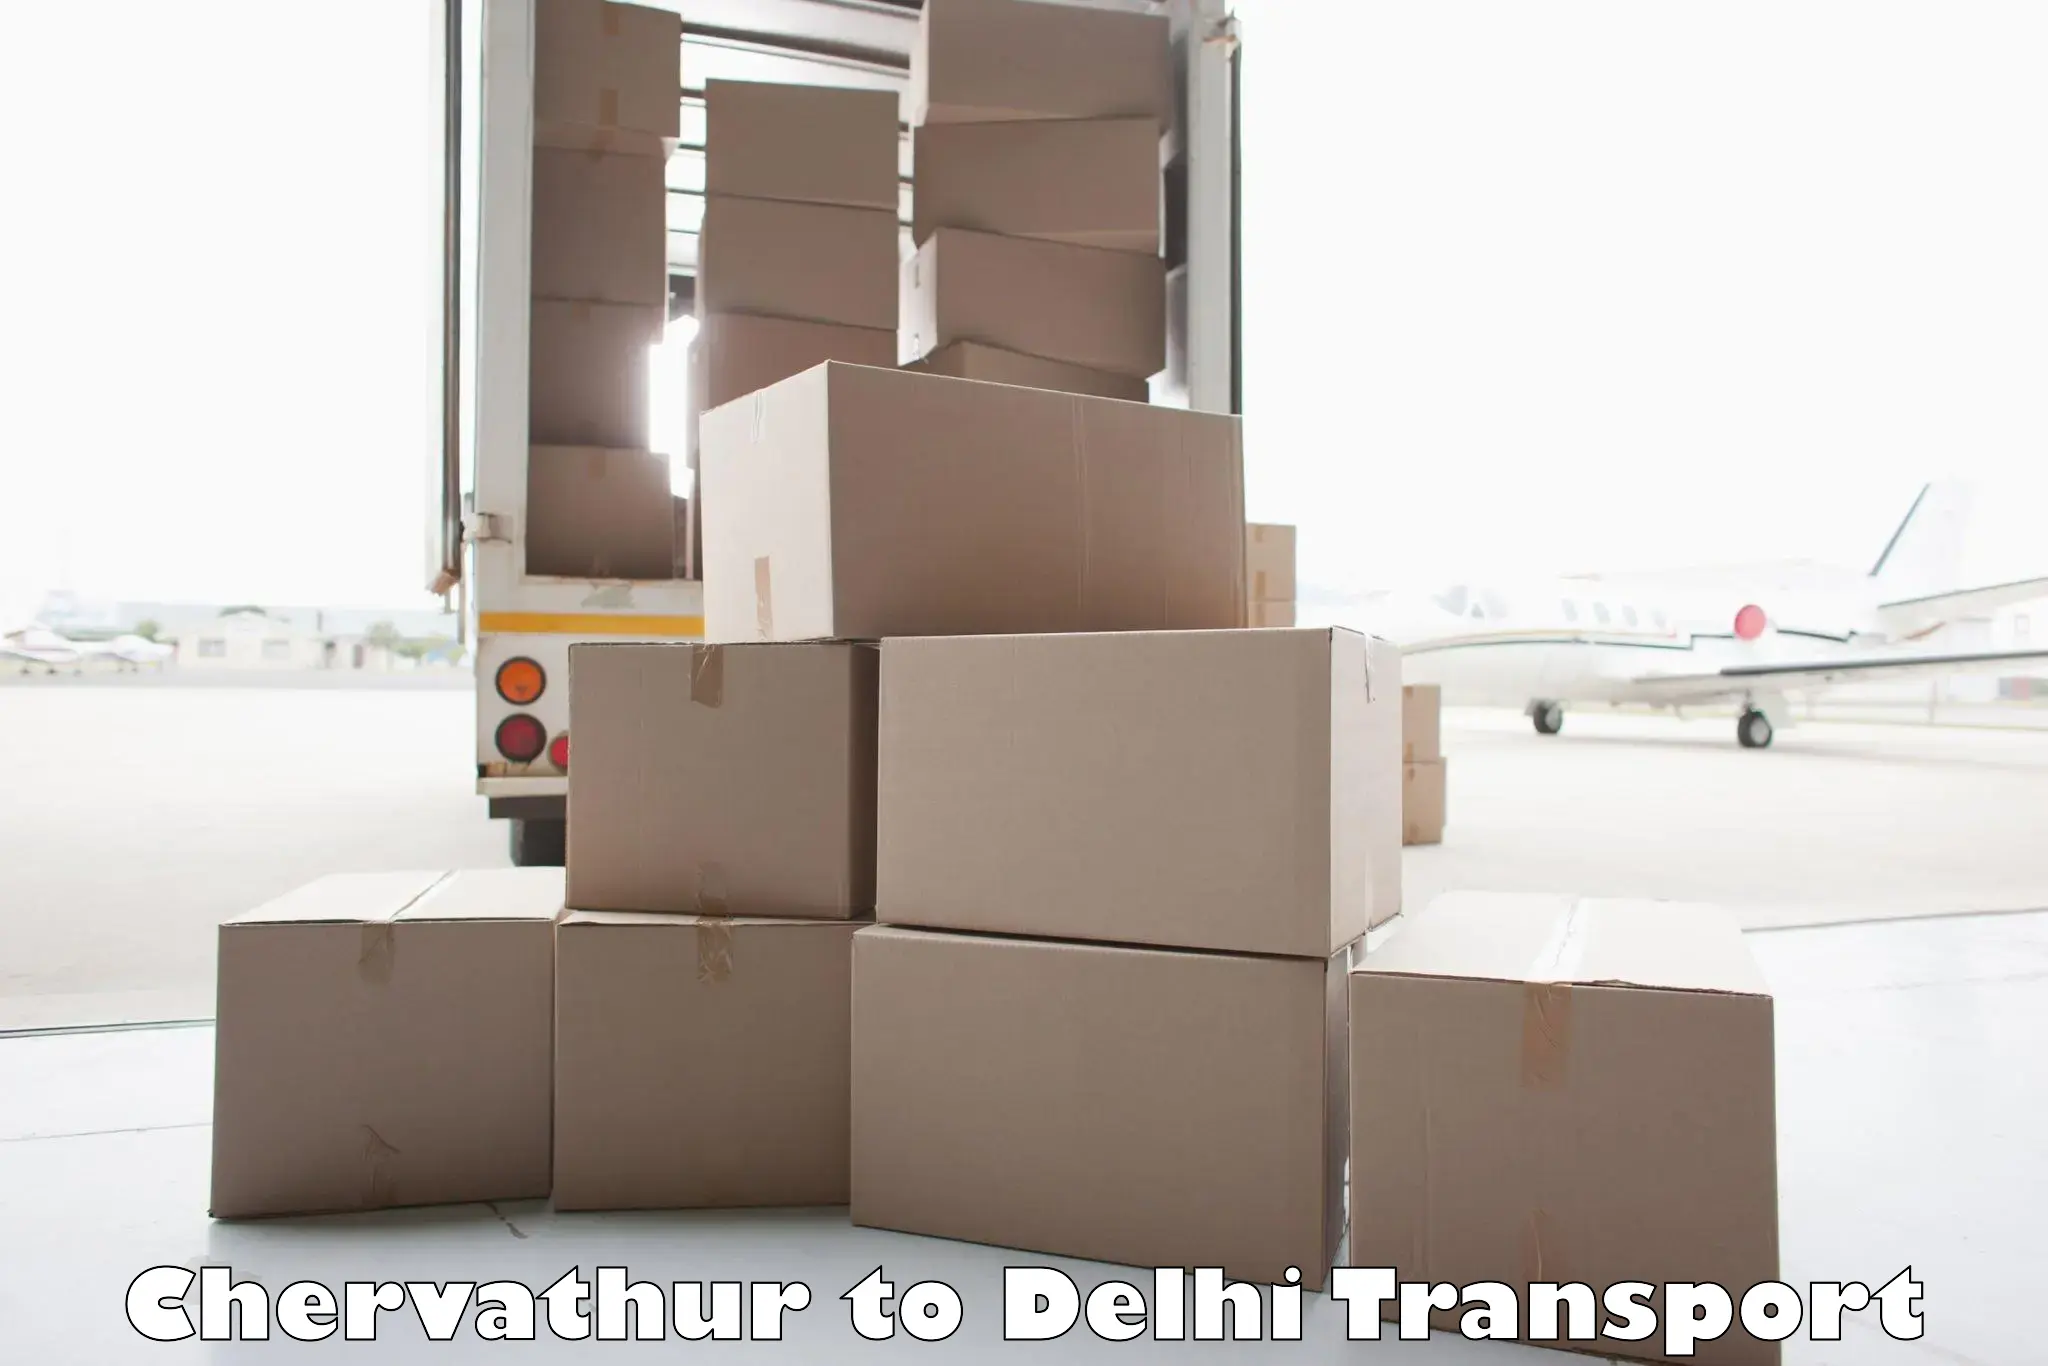 Nearest transport service Chervathur to Jhilmil